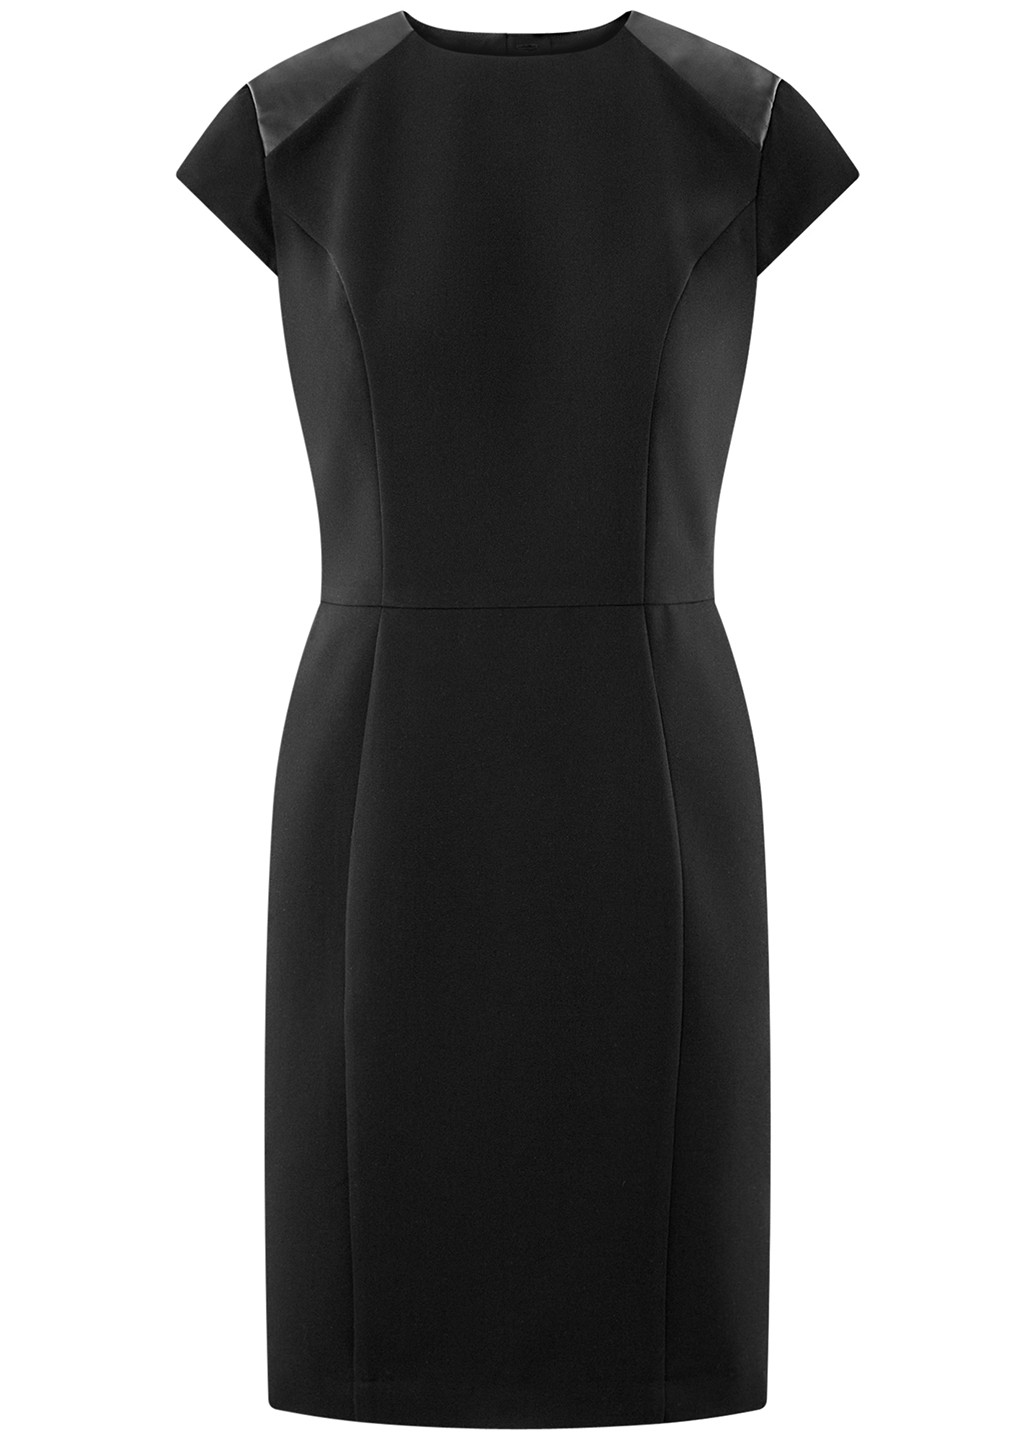 Черное деловое платье футляр Oodji однотонное